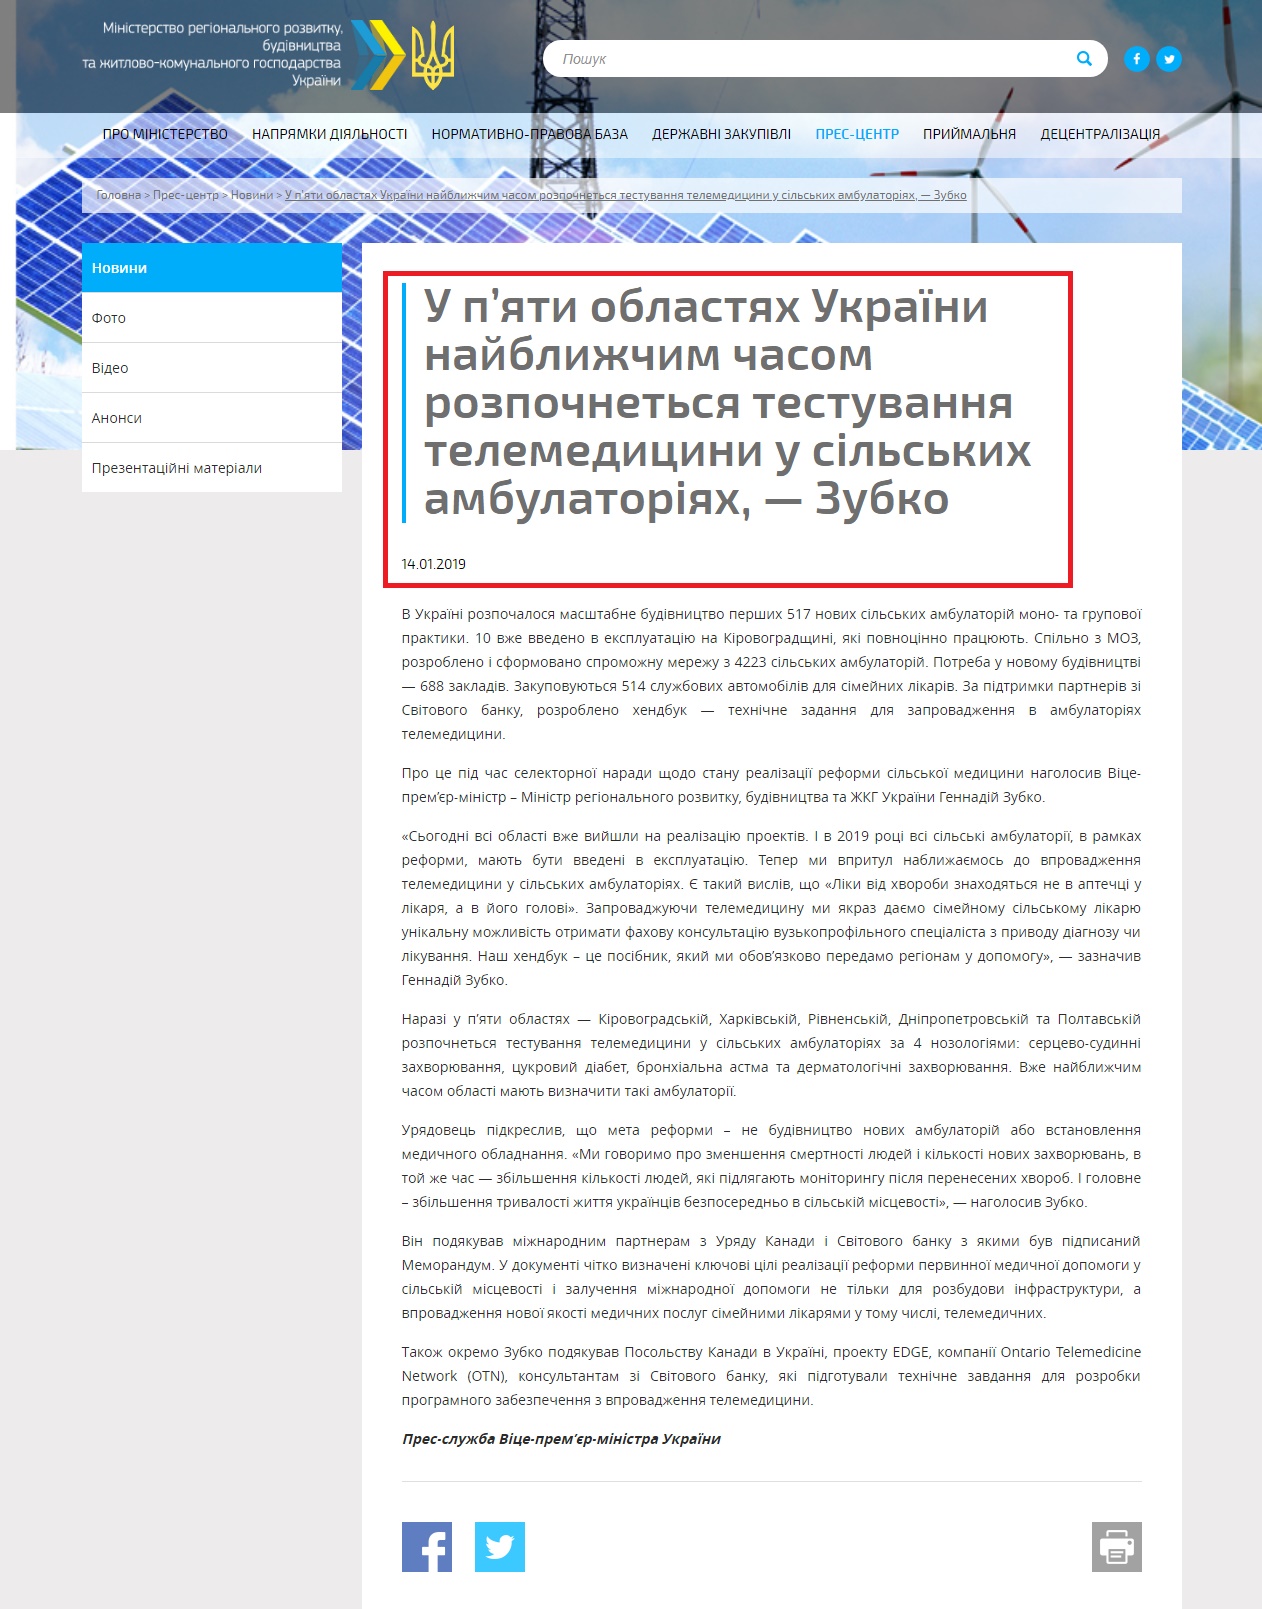 http://www.minregion.gov.ua/press/news/u-p-yati-oblastyah-ukrayini-nayblizhchim-chasom-rozpochnetsya-testuvannya-telemeditsini-u-silskih-ambulatoriyah-zubko/